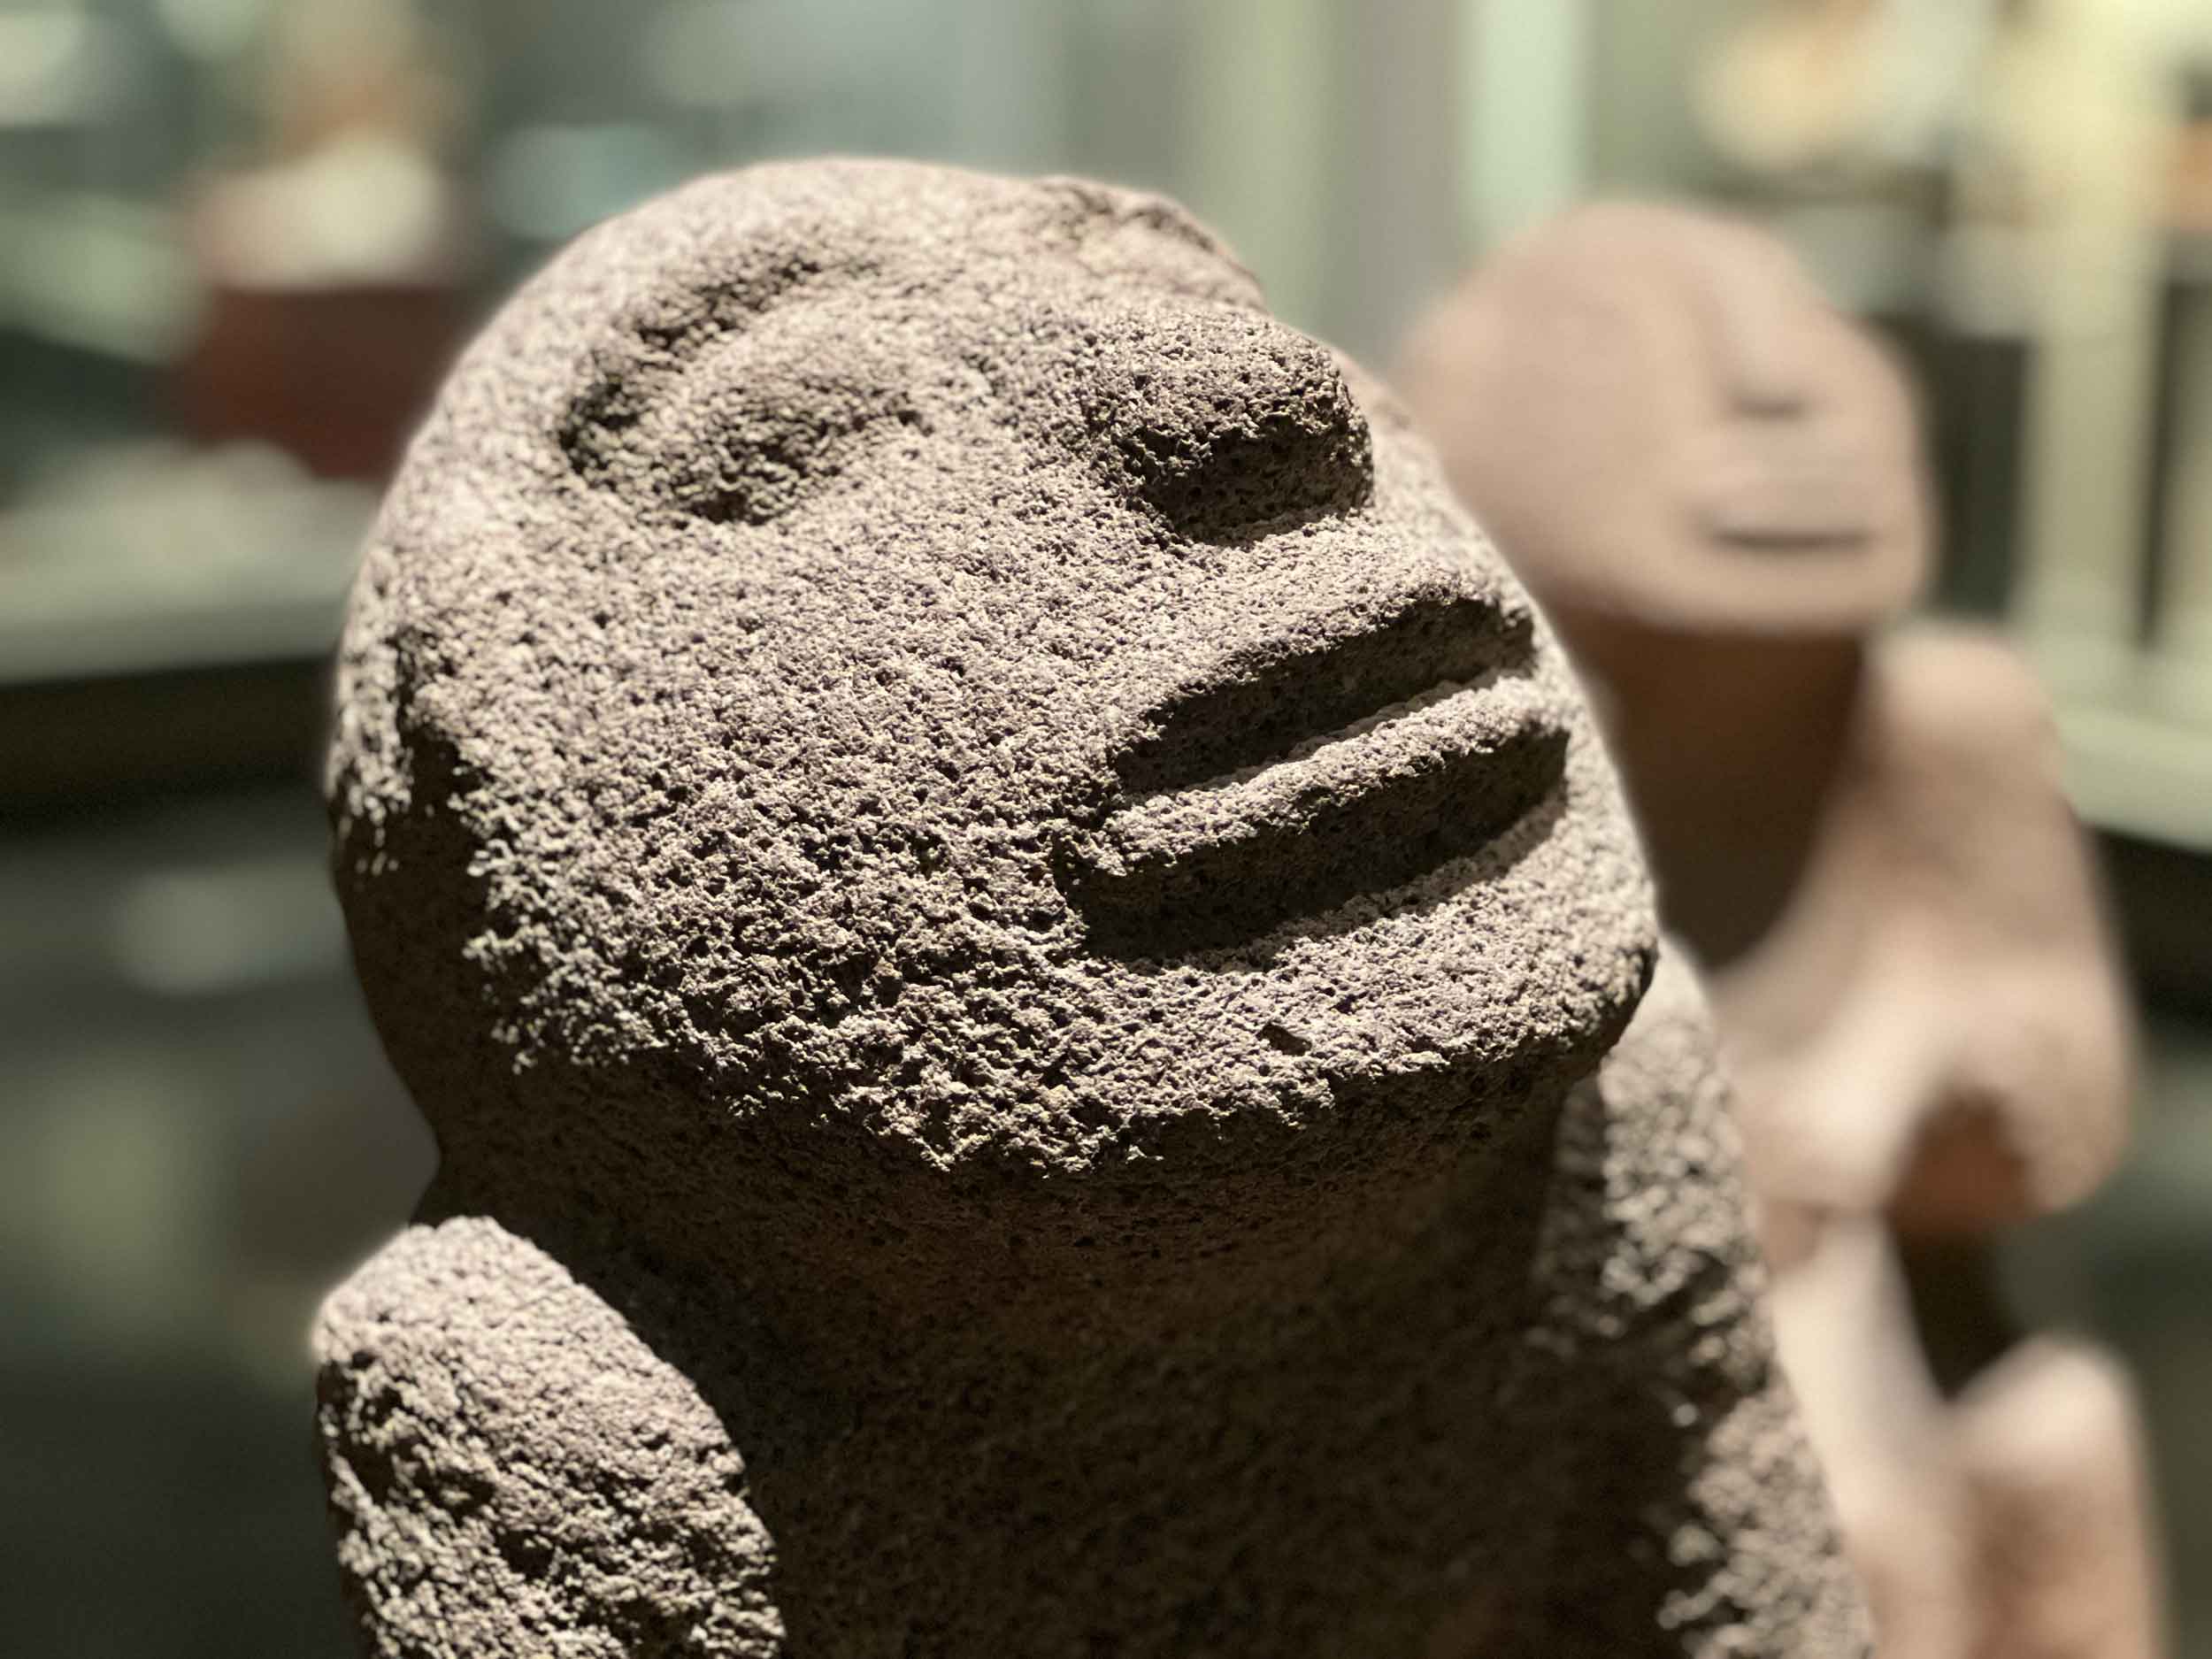 A visit to the Museo Nacional de Antropología, Mexico City